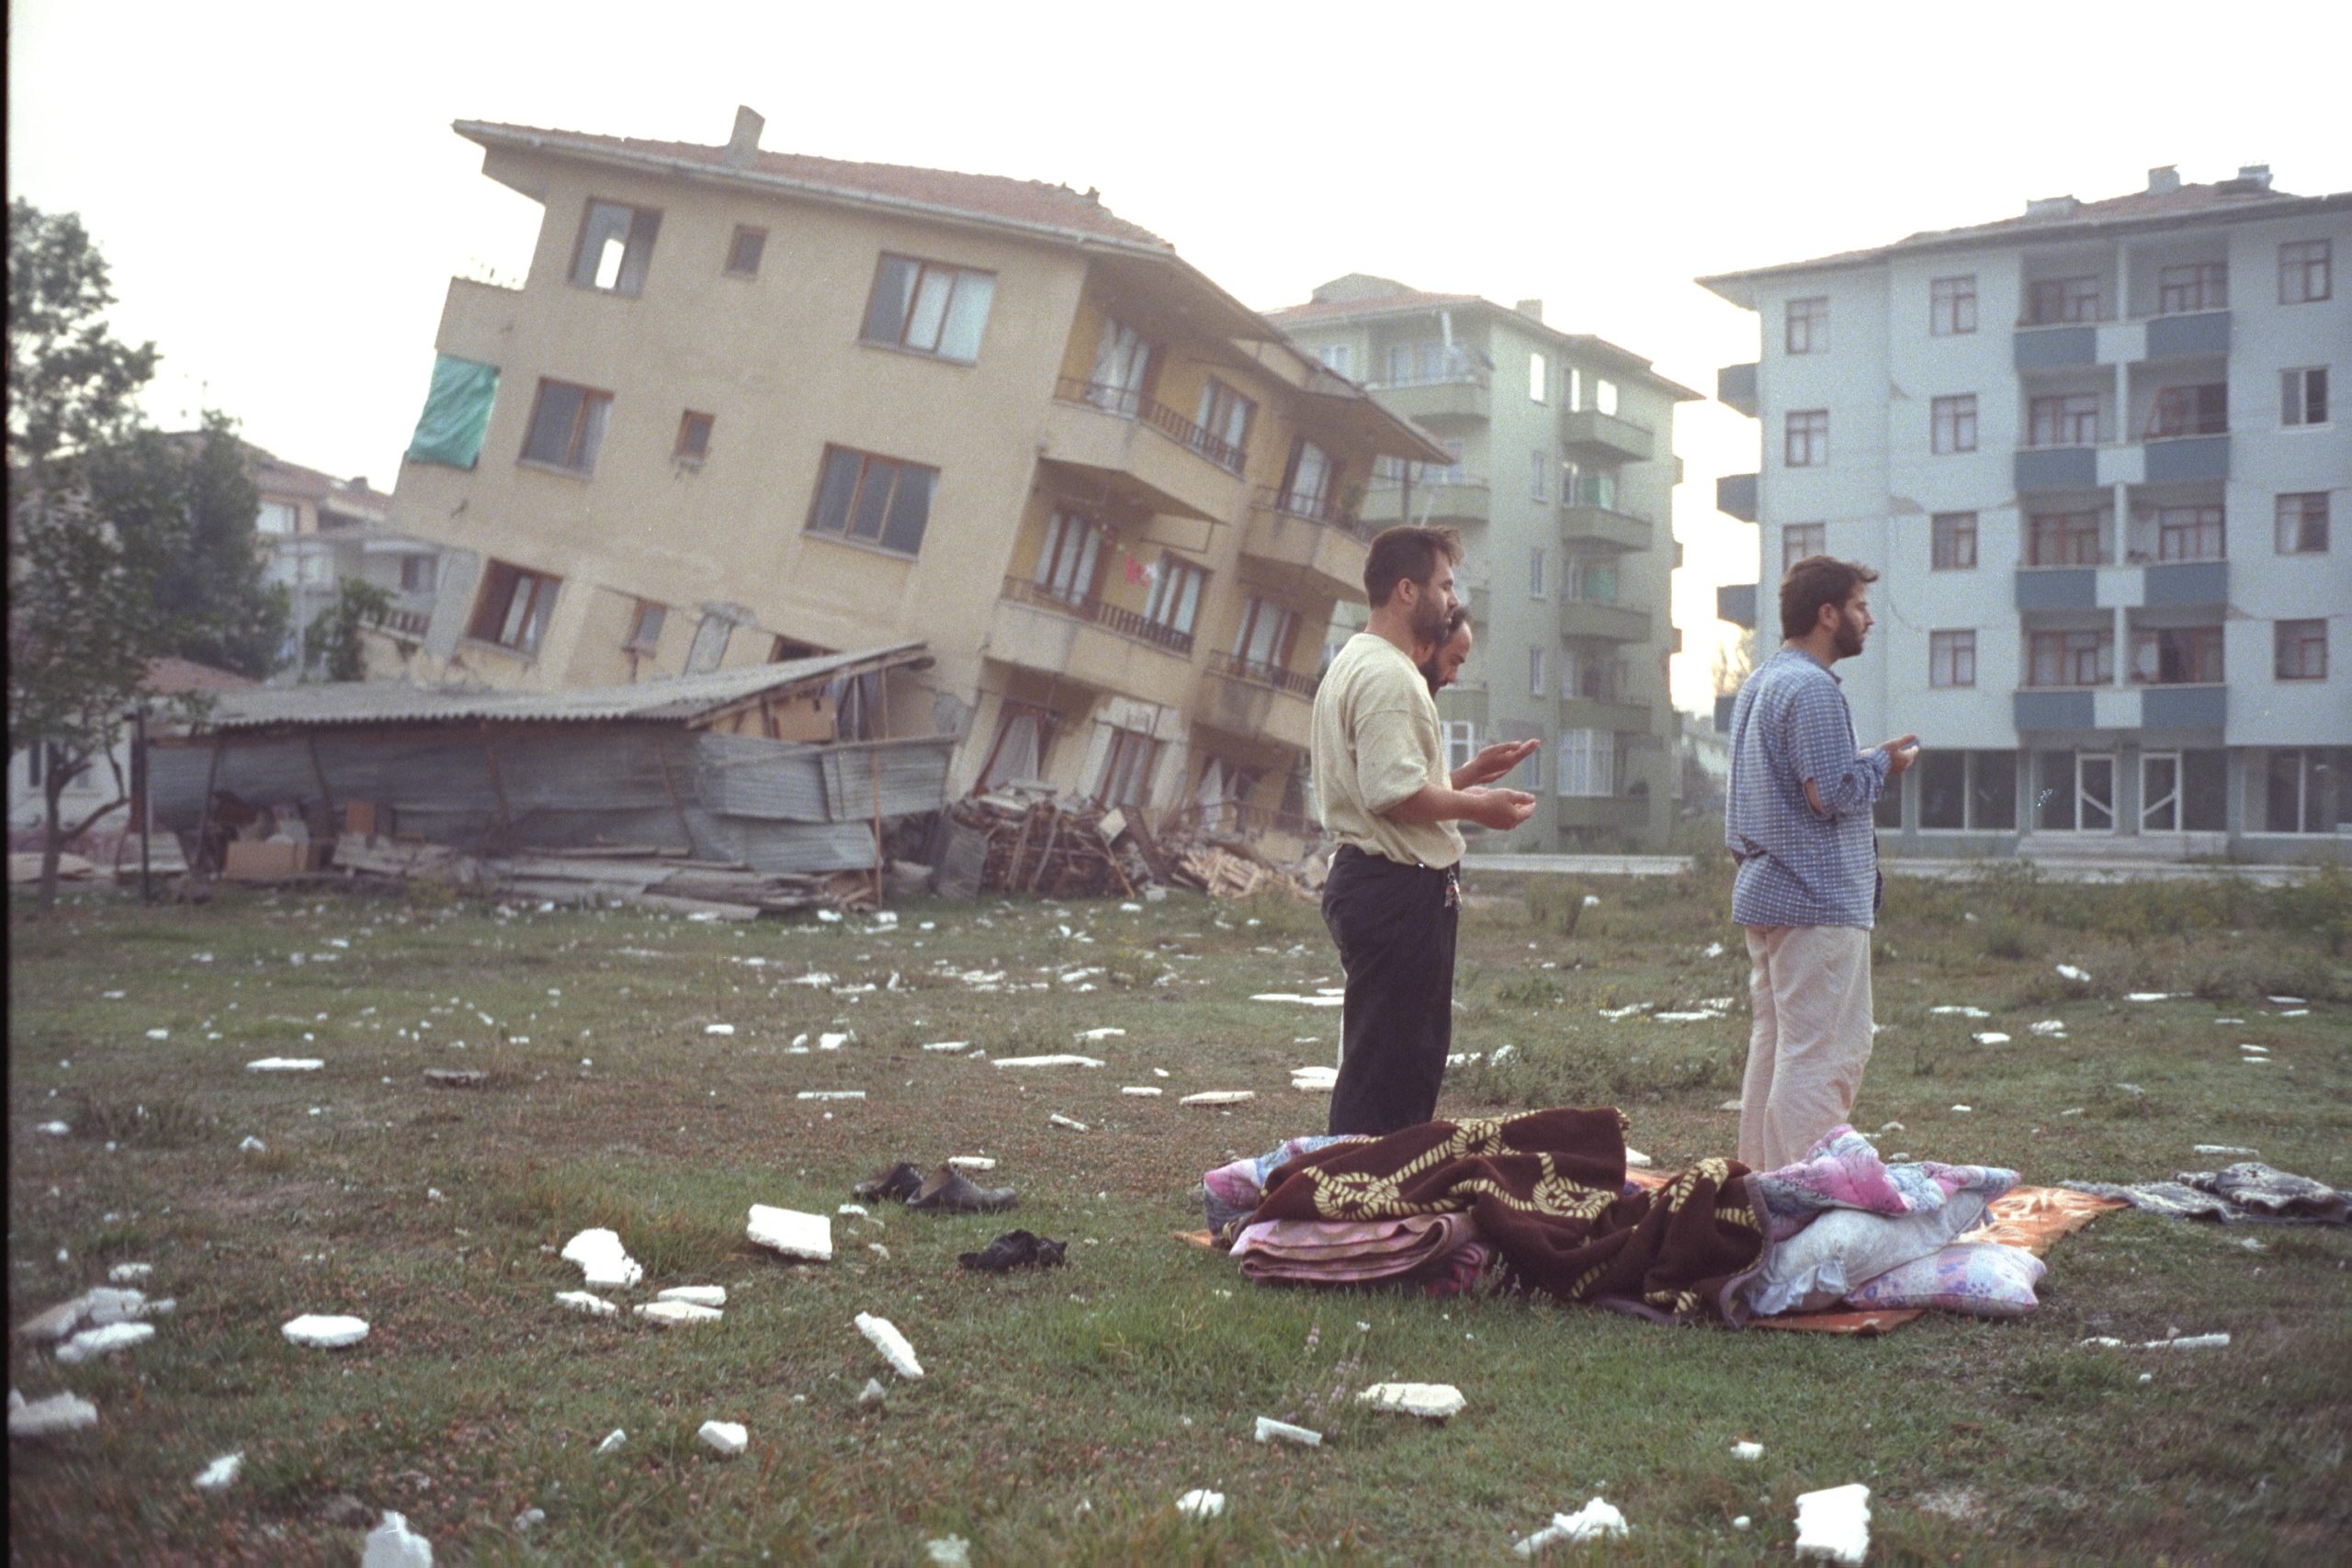 زلزال تركيا 1999 الذي خلَّف وراءه مدينة غارقة تحت البحر | عربي بوست